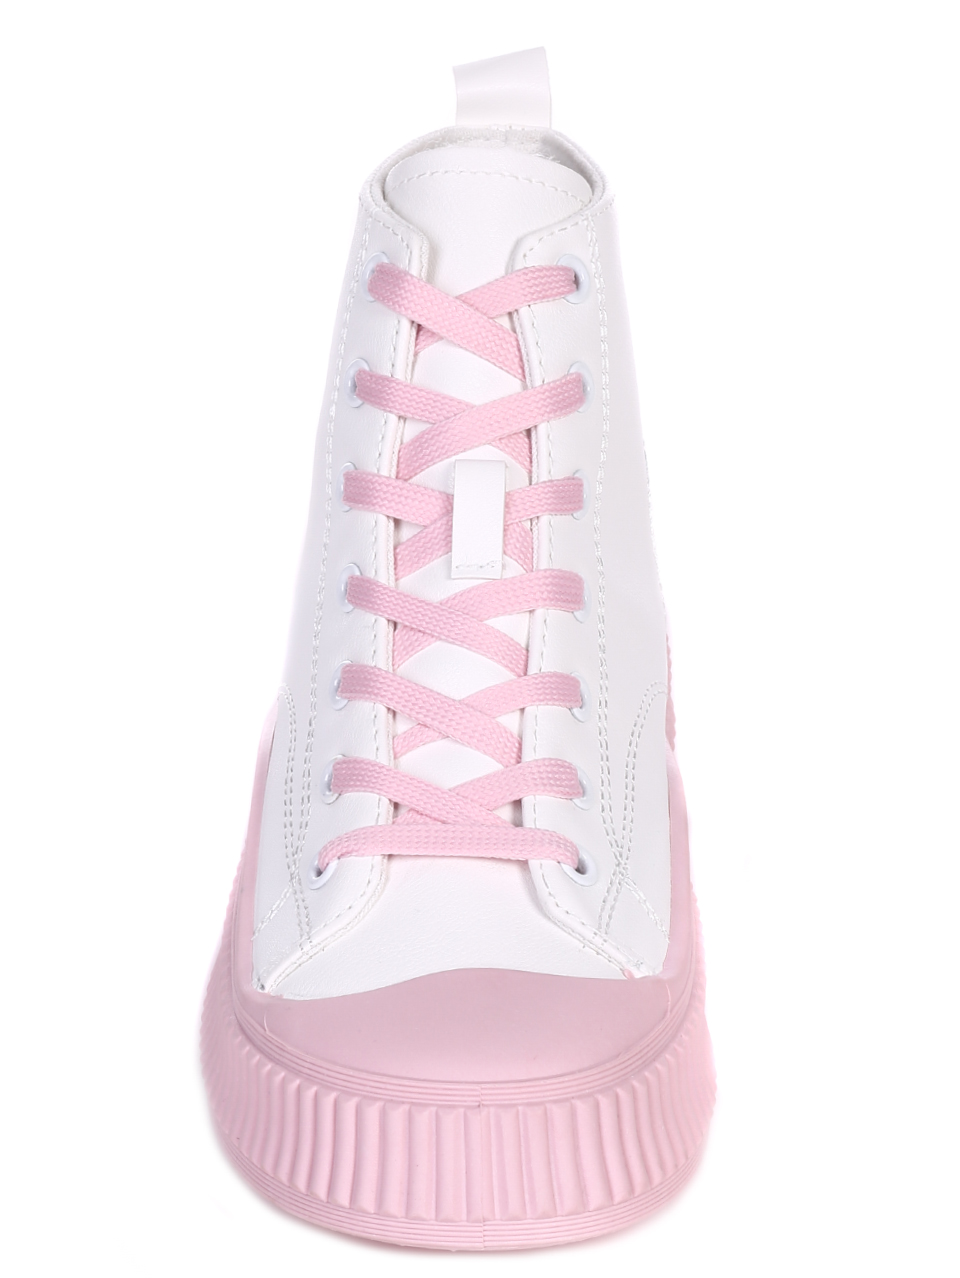 Ежедневни дамски обувки в бяло и розово 2U-22032 white/pink